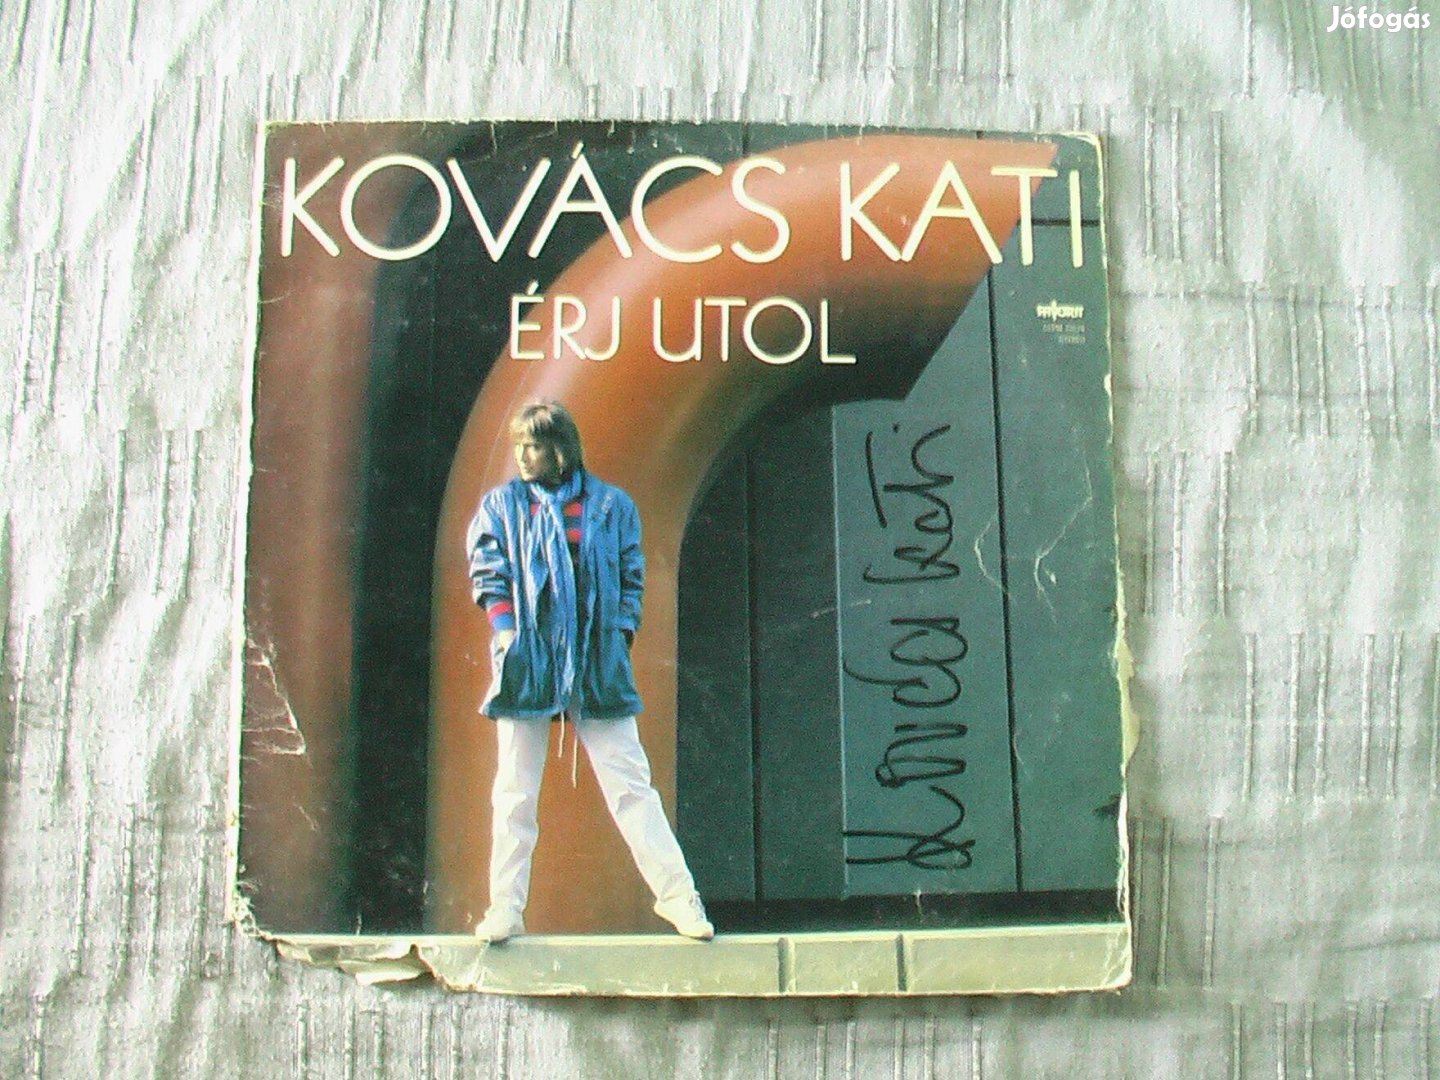 Kovács Kati dedikált bakelit lemez